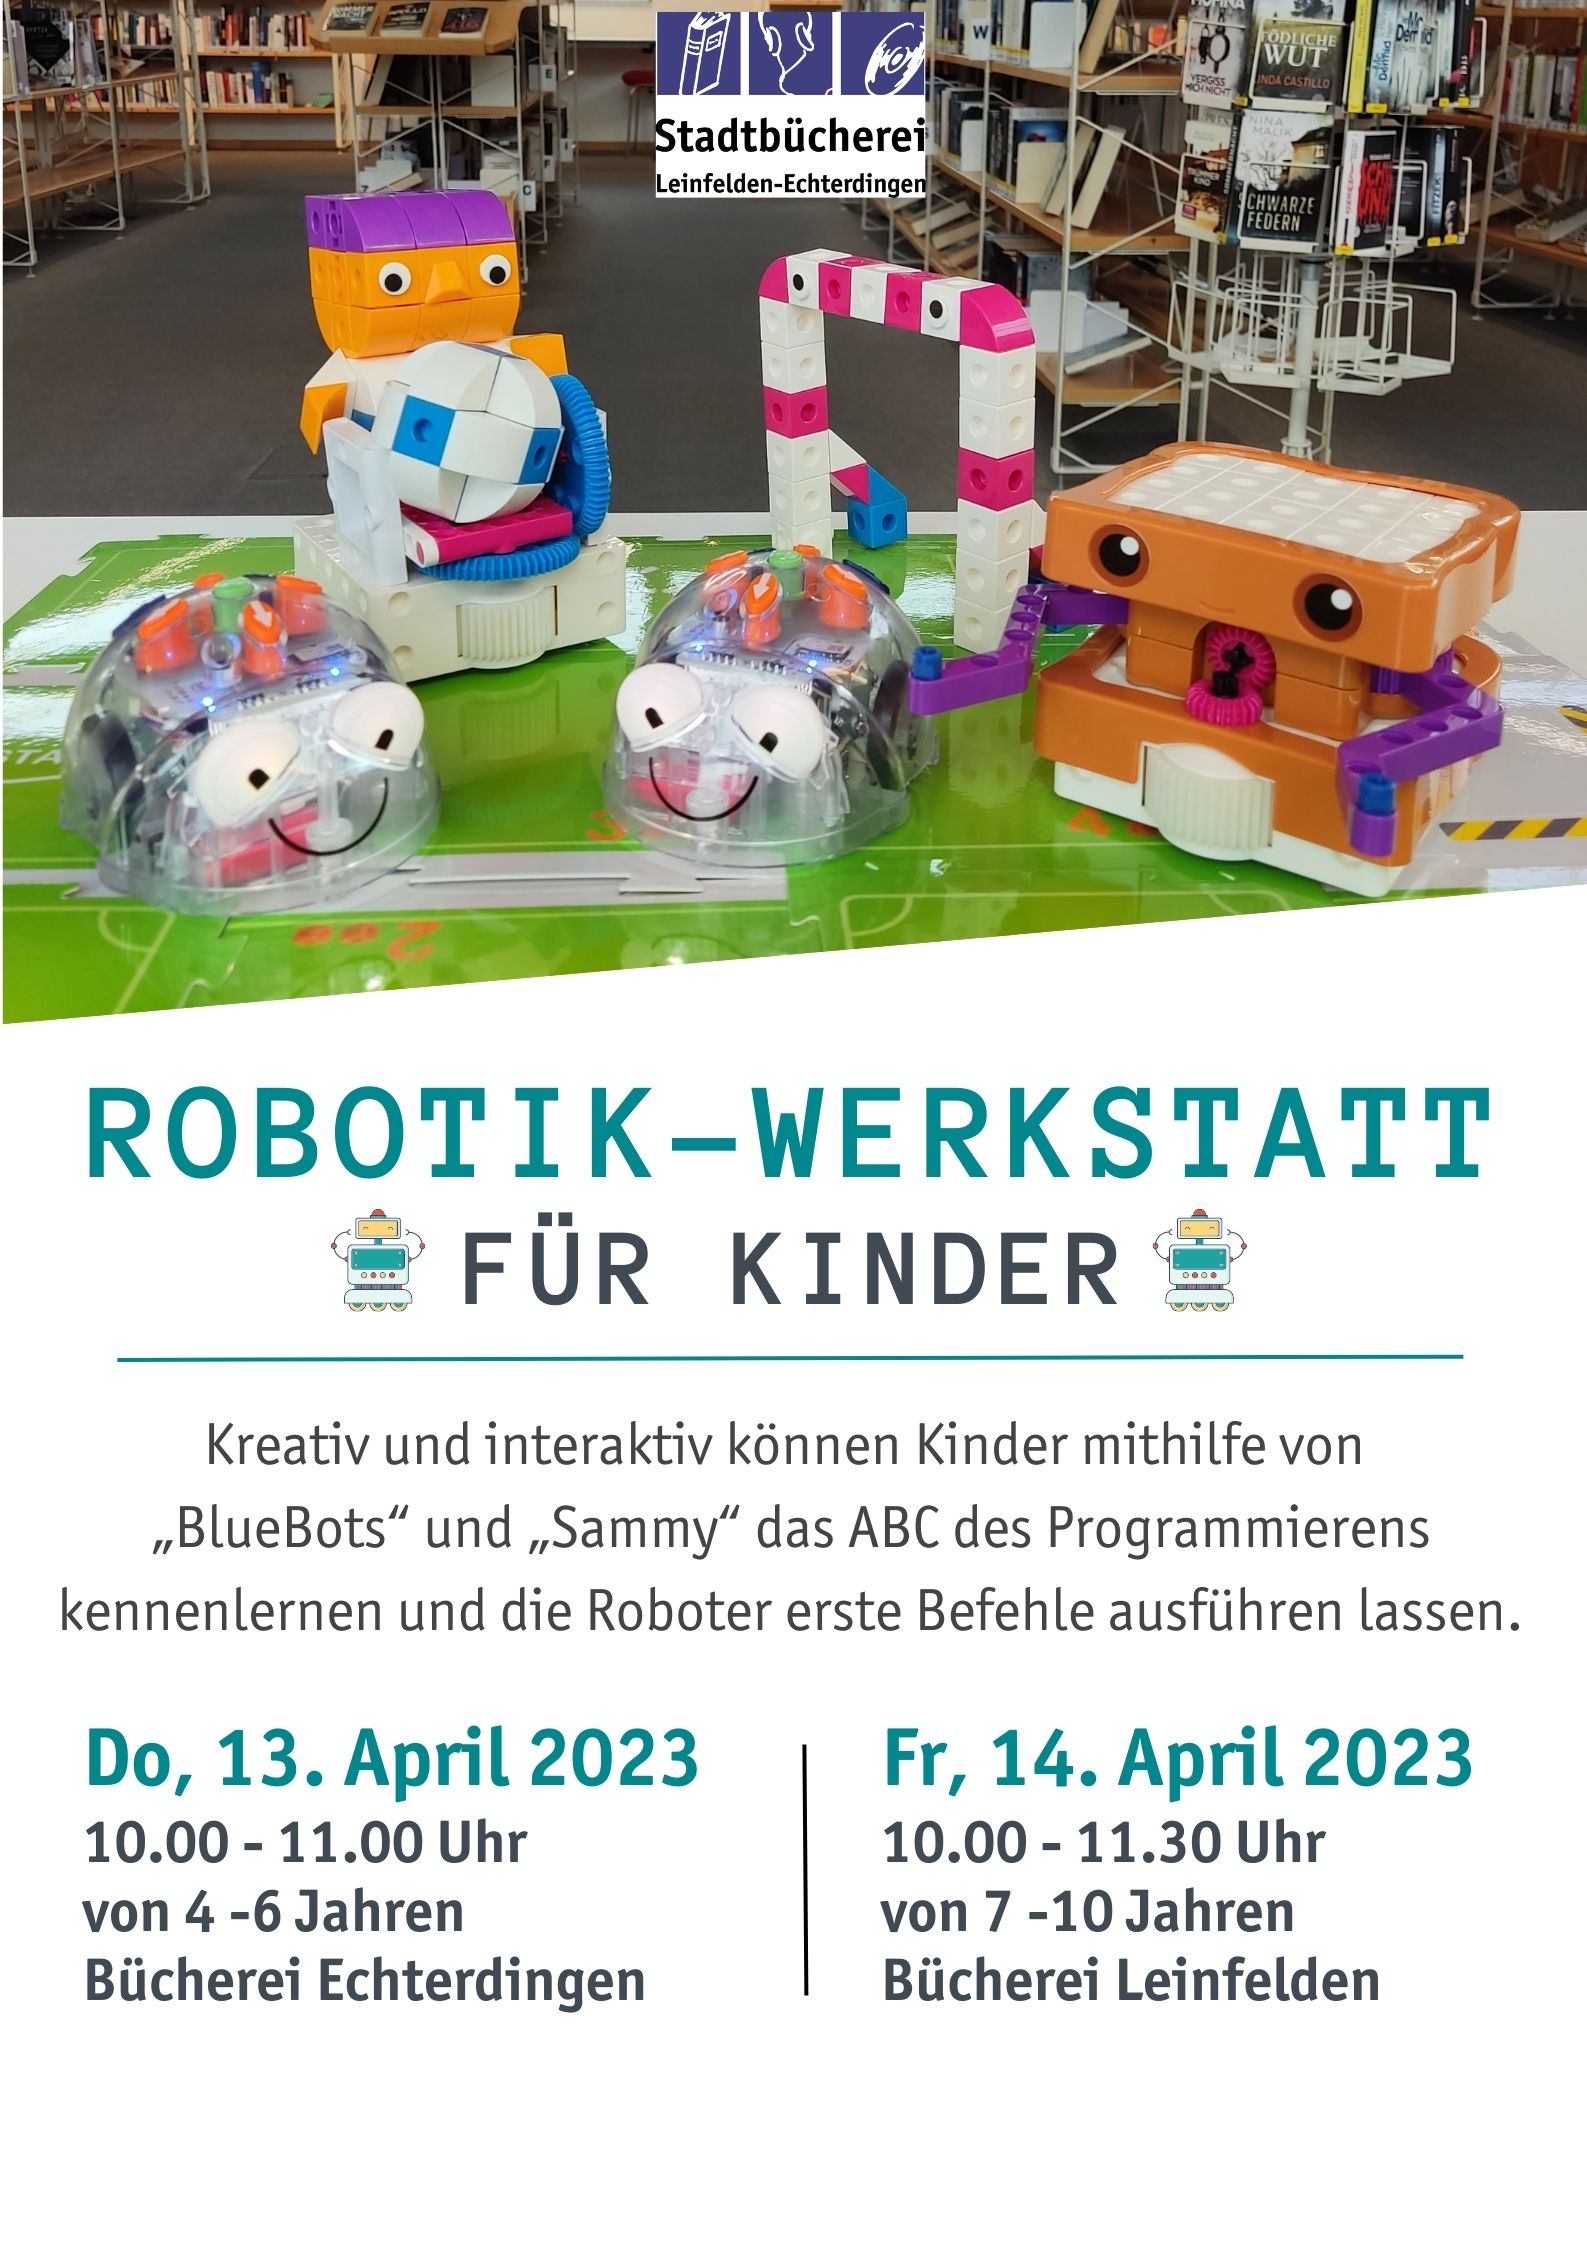 Robotik-Werkstatt für Kinder von 4 bis 6 Jahren